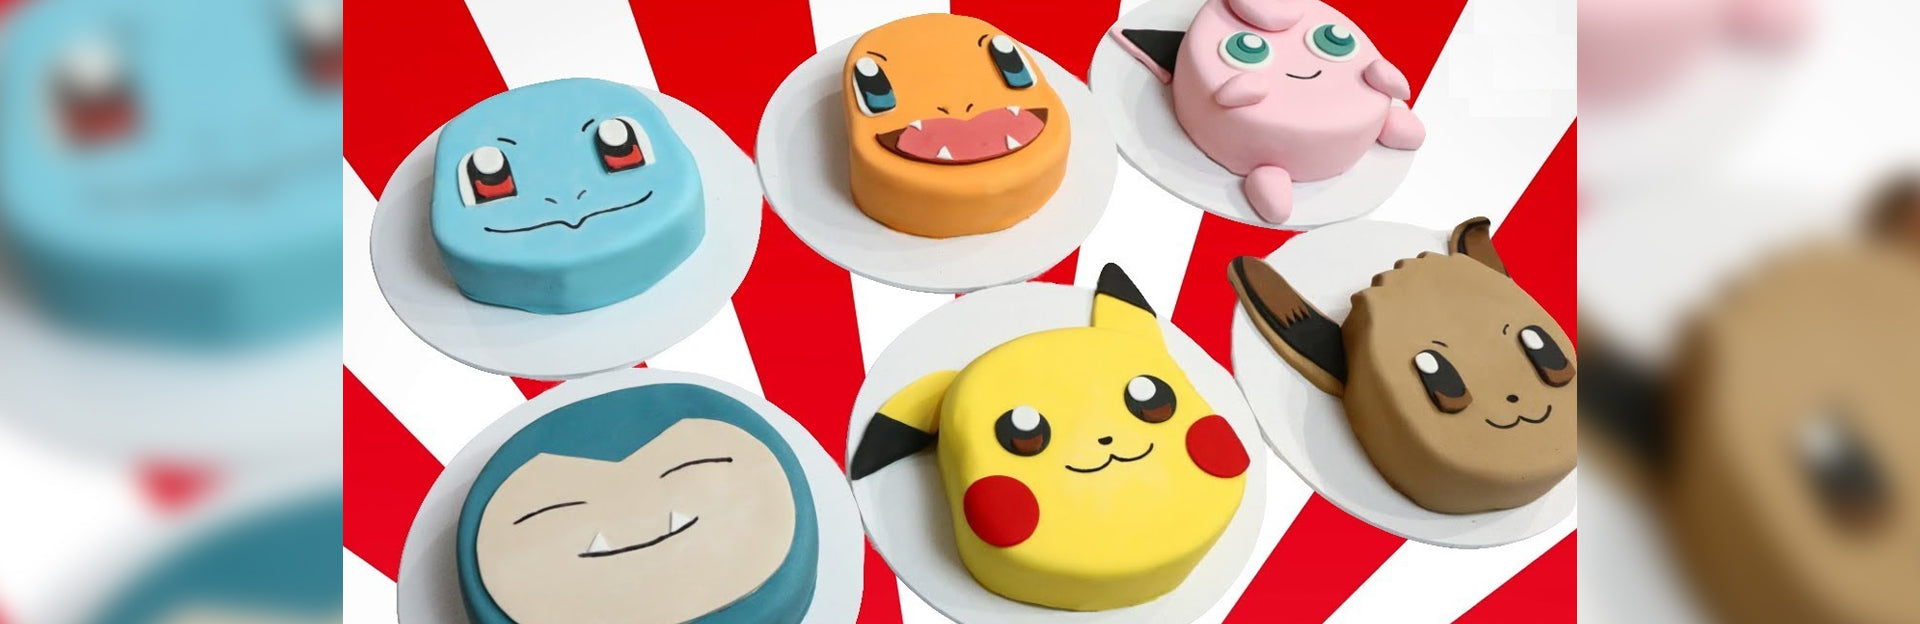 20 Easy Pokemon Birthday Party Ideas